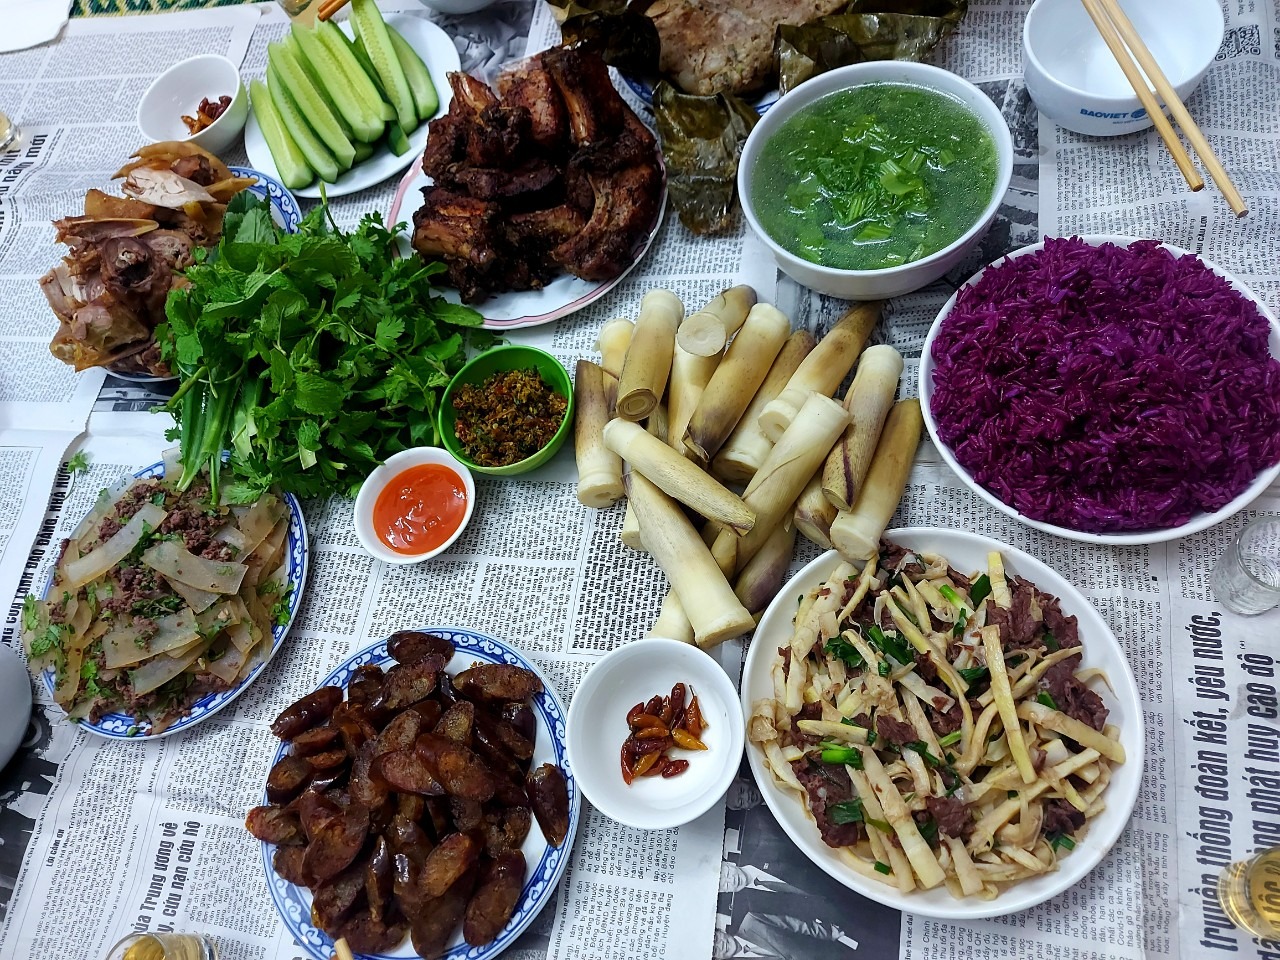 Trải nghiệm Điện Biên - nơi của nhiều món ăn đặc sản độc đáo - 8